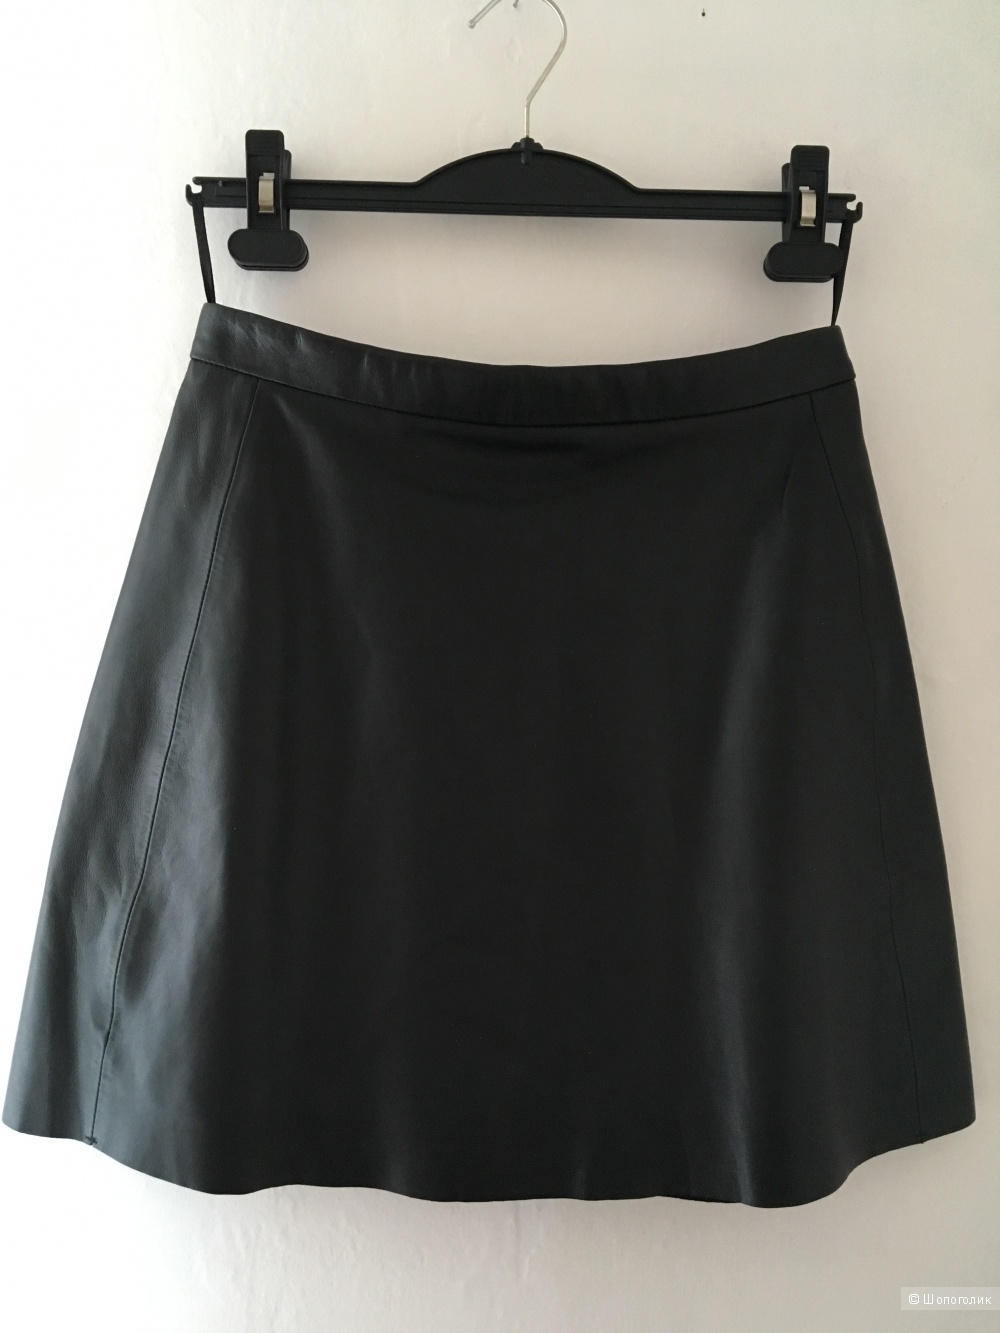 Кожаная юбка MUUBAA размер 44-46,  12 UK